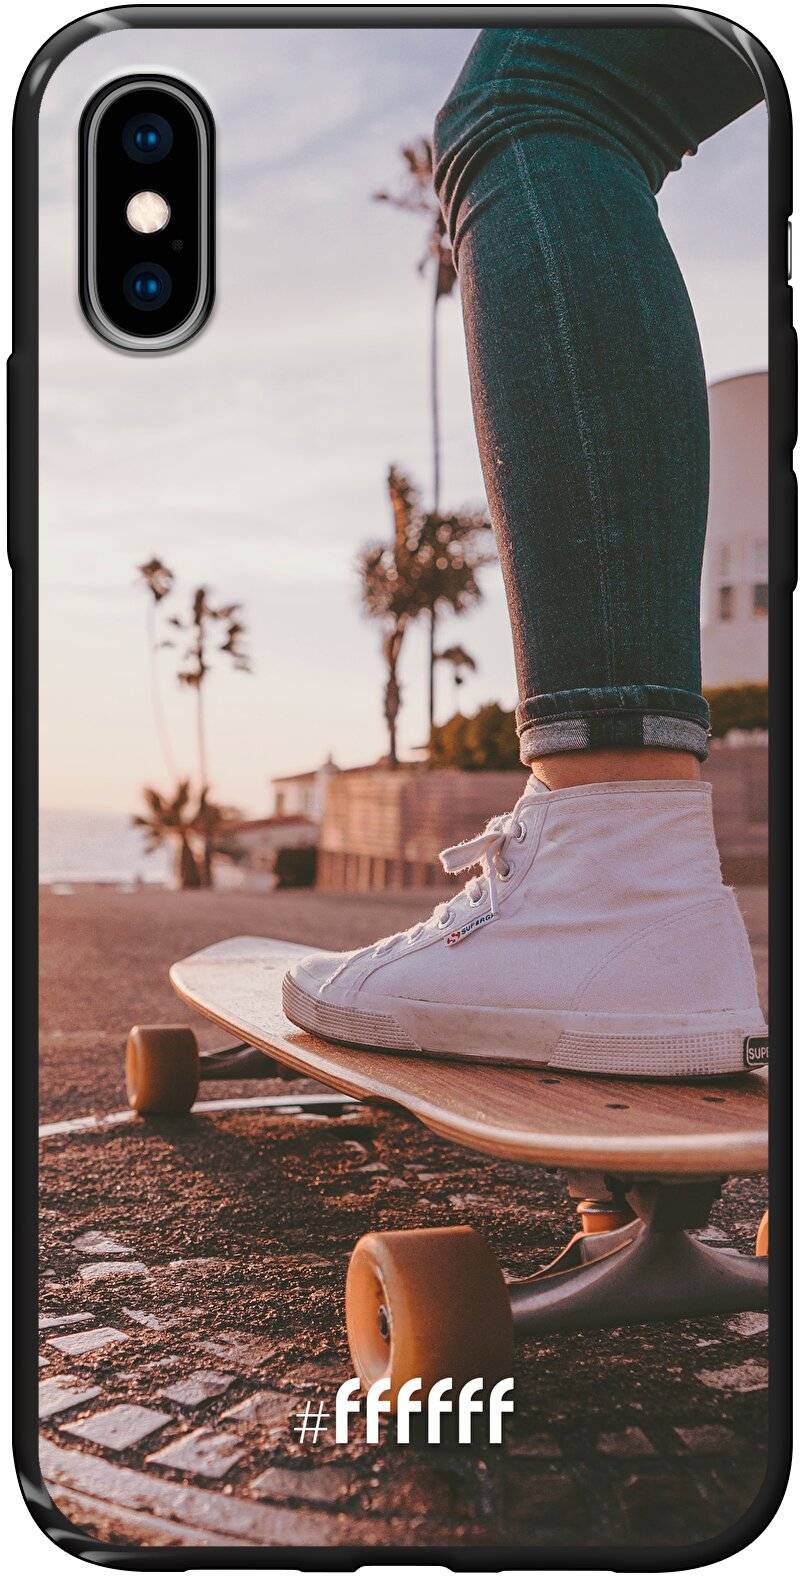 Skateboarding iPhone X